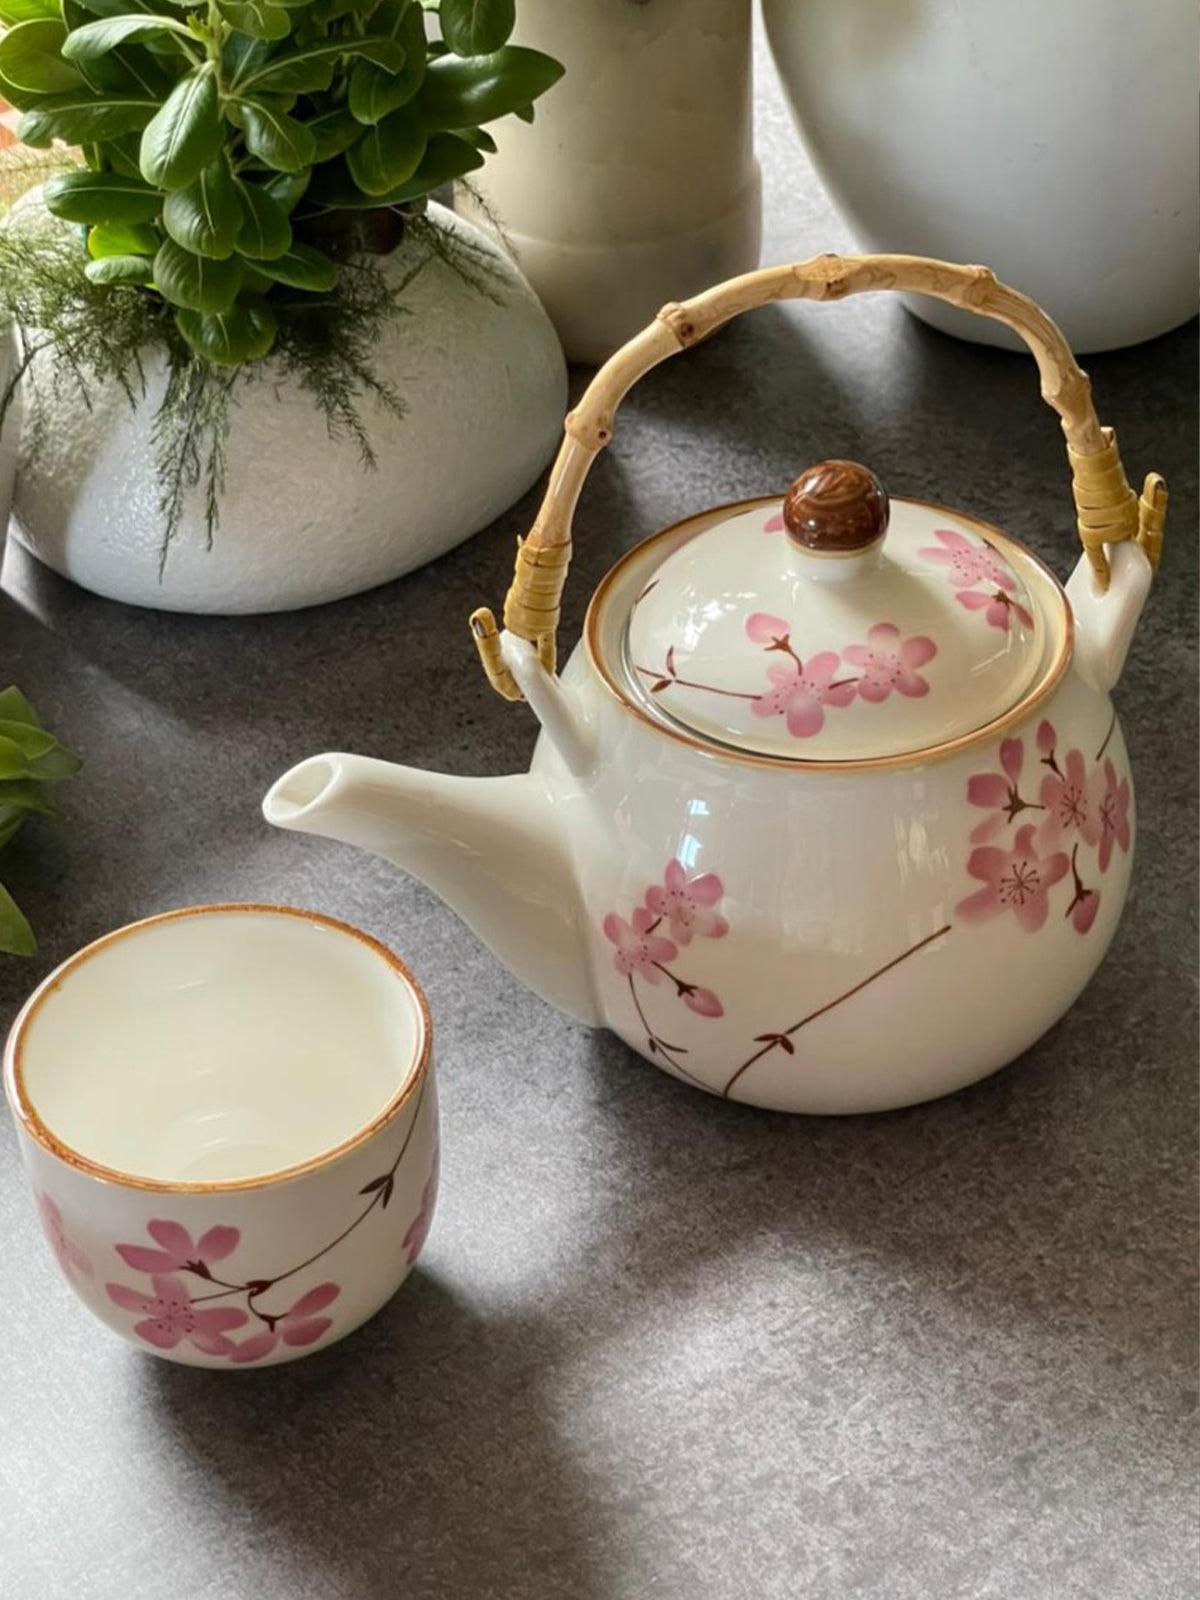 https://odette.in/cdn/shop/products/beautiful-7-piece-tea-pot-set-odette_1400x.jpg?v=1663228830